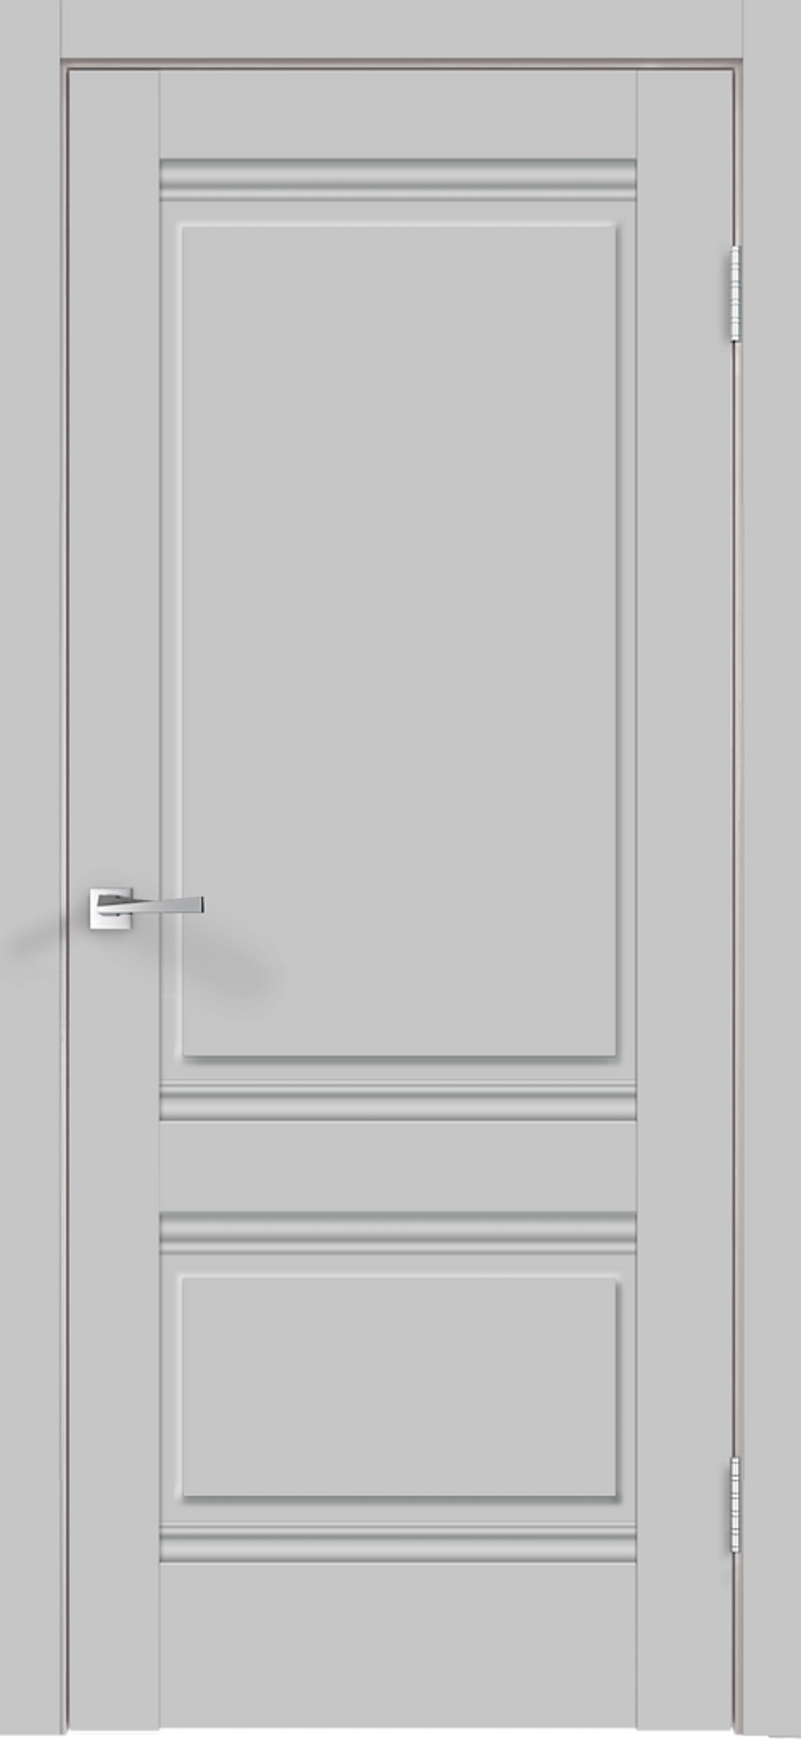 91086430 Межкомнатная дверь Alto глухая без замка и петель в комплекте 200x90см серый STLM-0476968 VELLDORIS